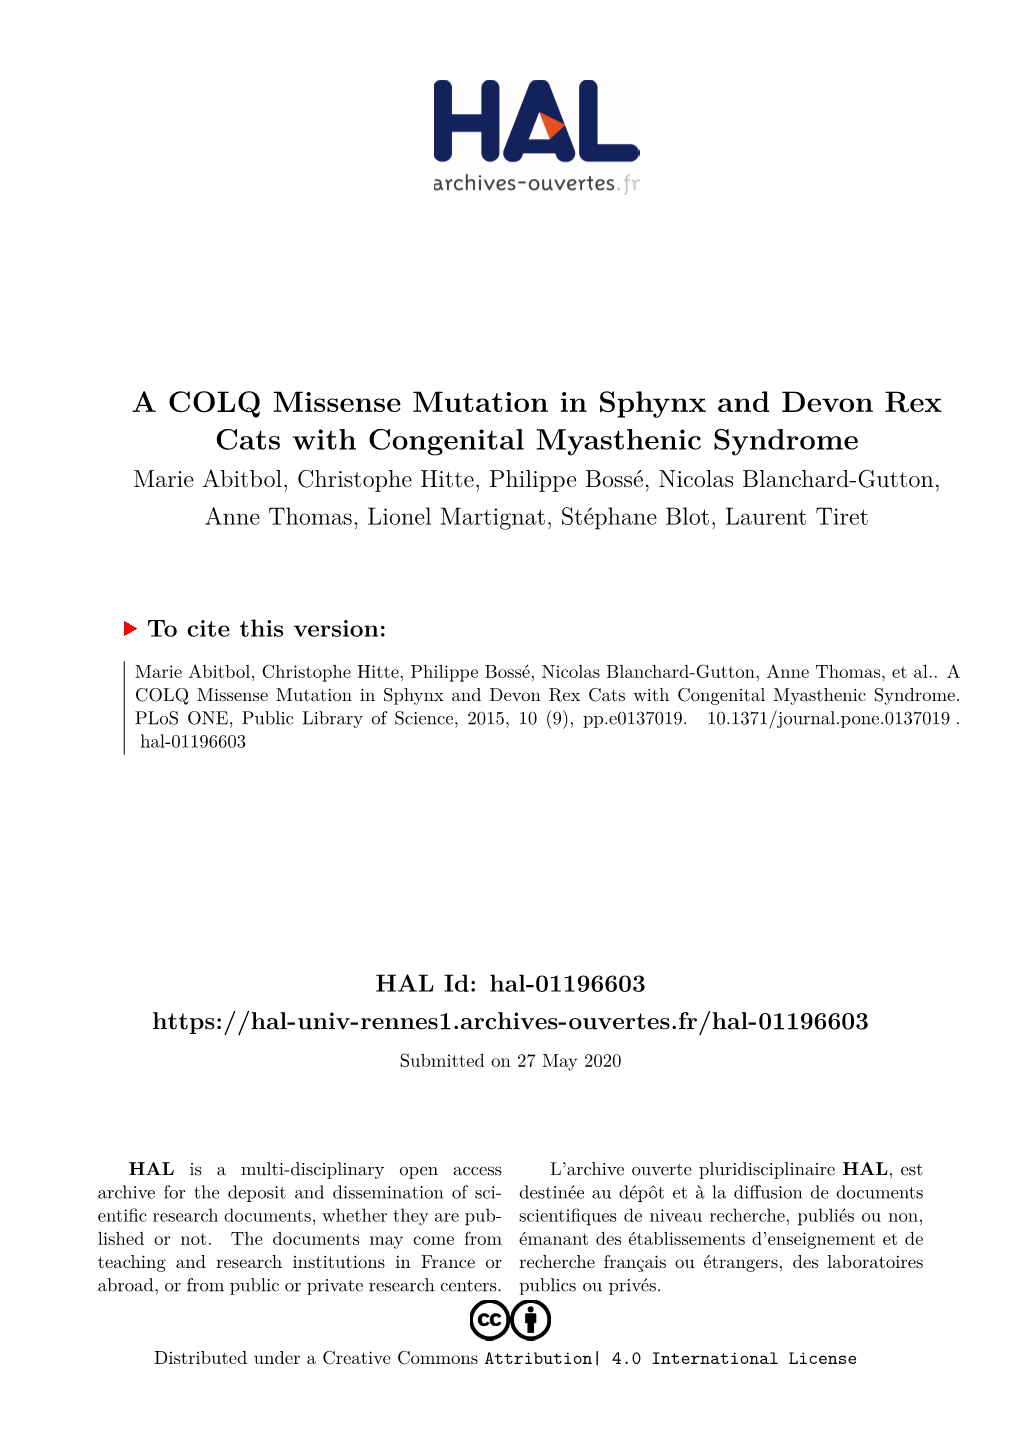 A COLQ Missense Mutation in Sphynx and Devon Rex